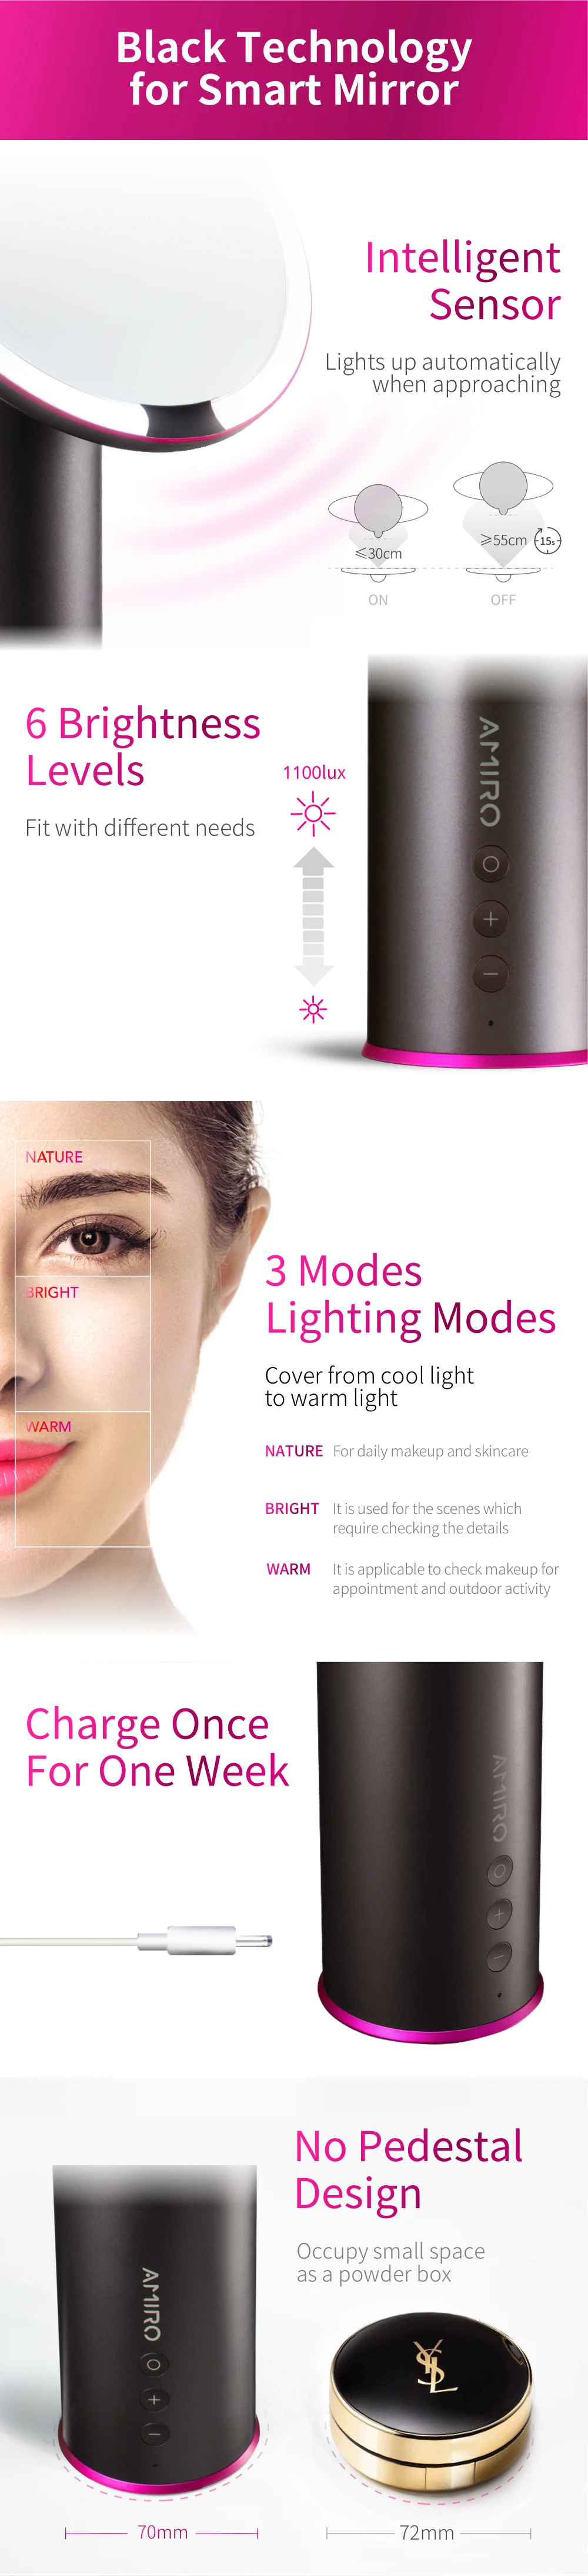 AMIRO 8 дюймов светодиодный зеркало с подсветкой для макияжа w/Перезаряжаемые Батарея, кнопка включения/выключения Смарт Сенсор, Цвет четкость Системы